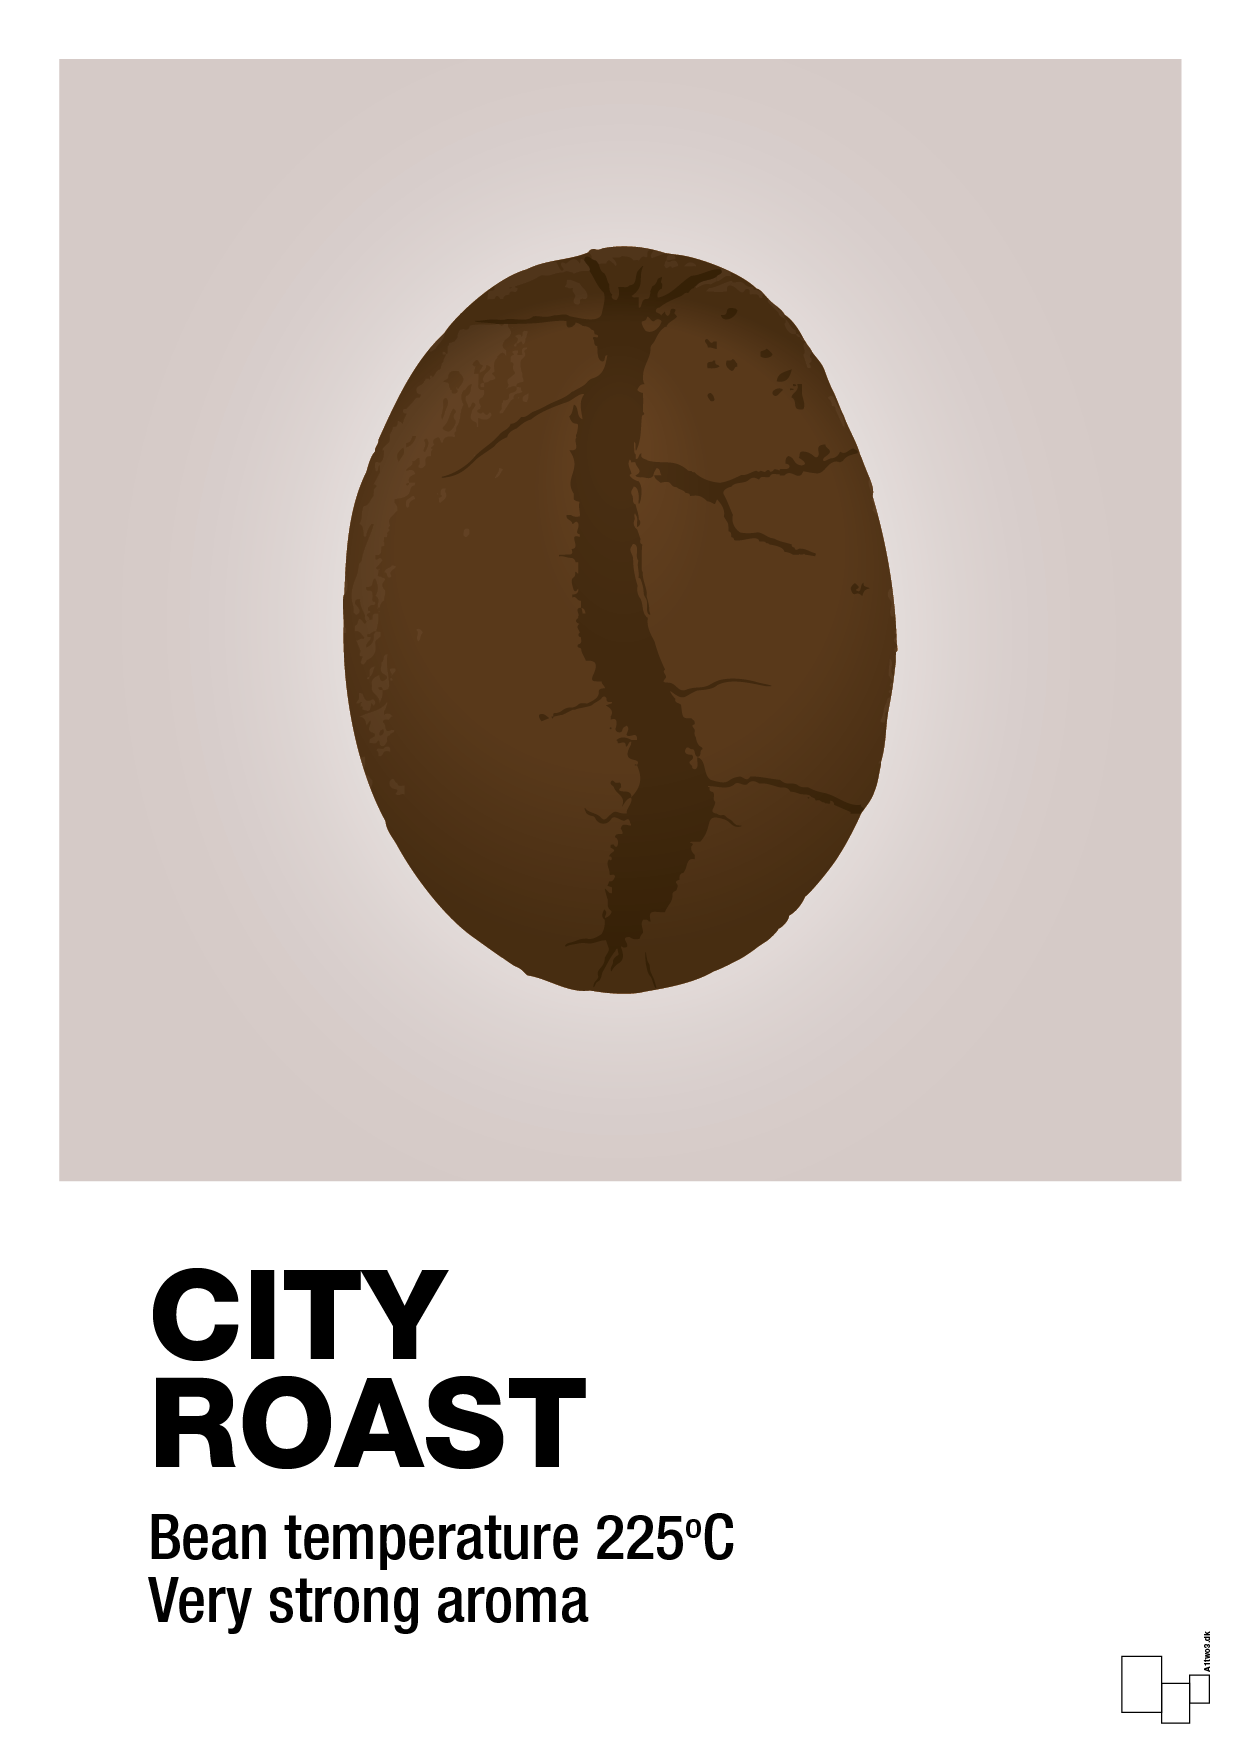 city roast - Plakat med Mad & Drikke i Broken Beige